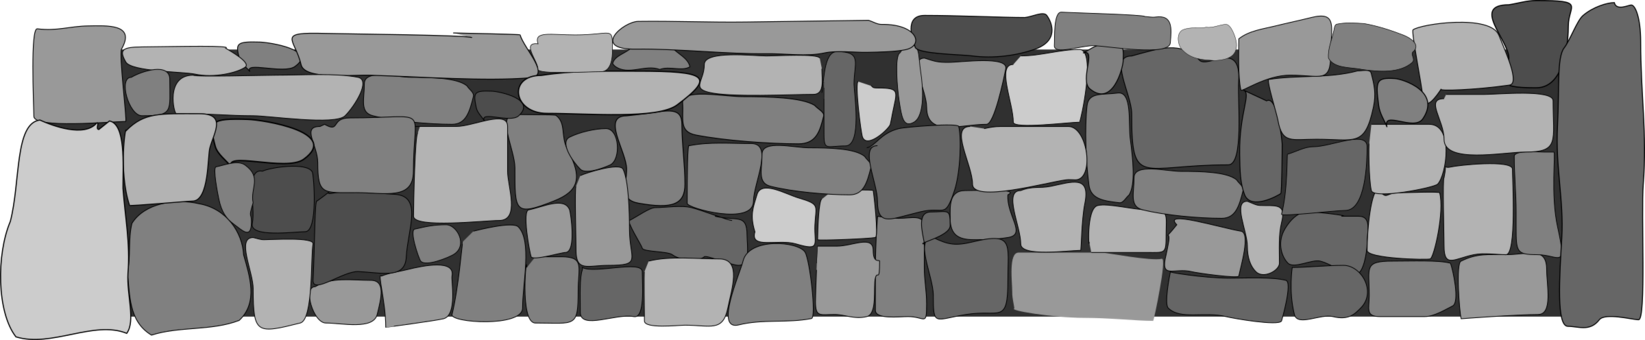 Bloc de pierre de brique PNG Image